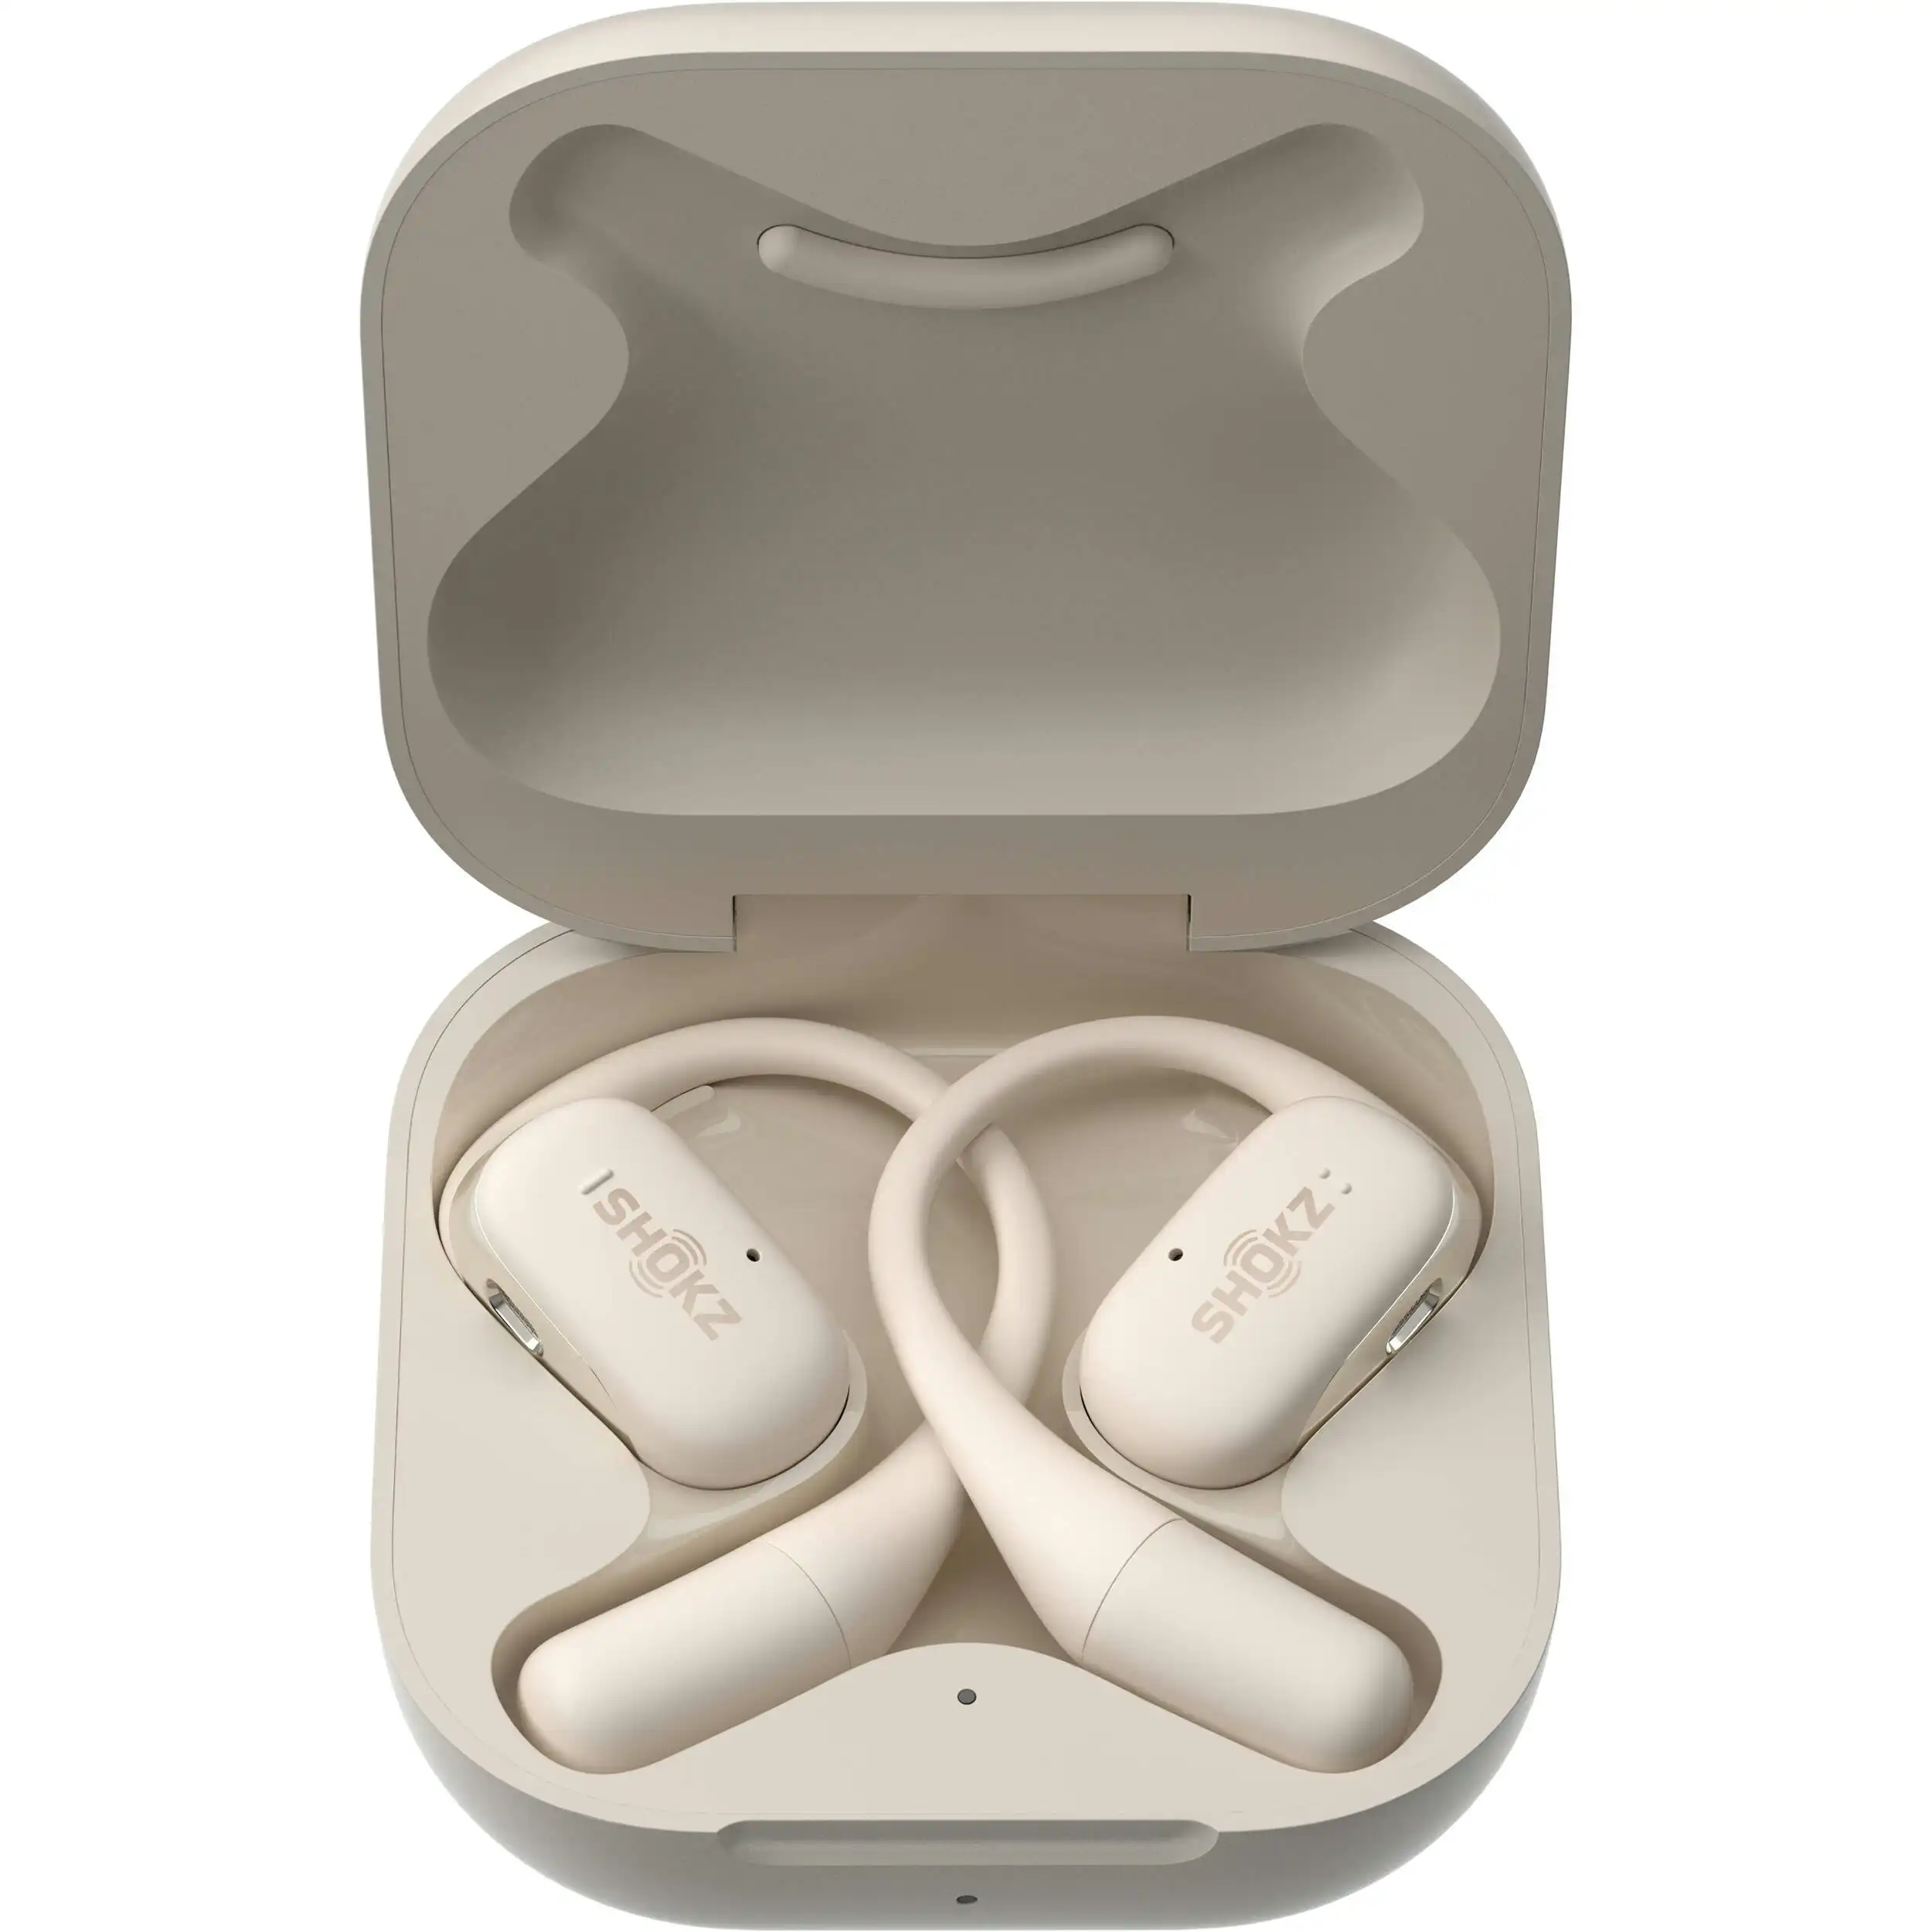 Shokz Openfit True Wireless Bone Conduction Earbuds - Beige